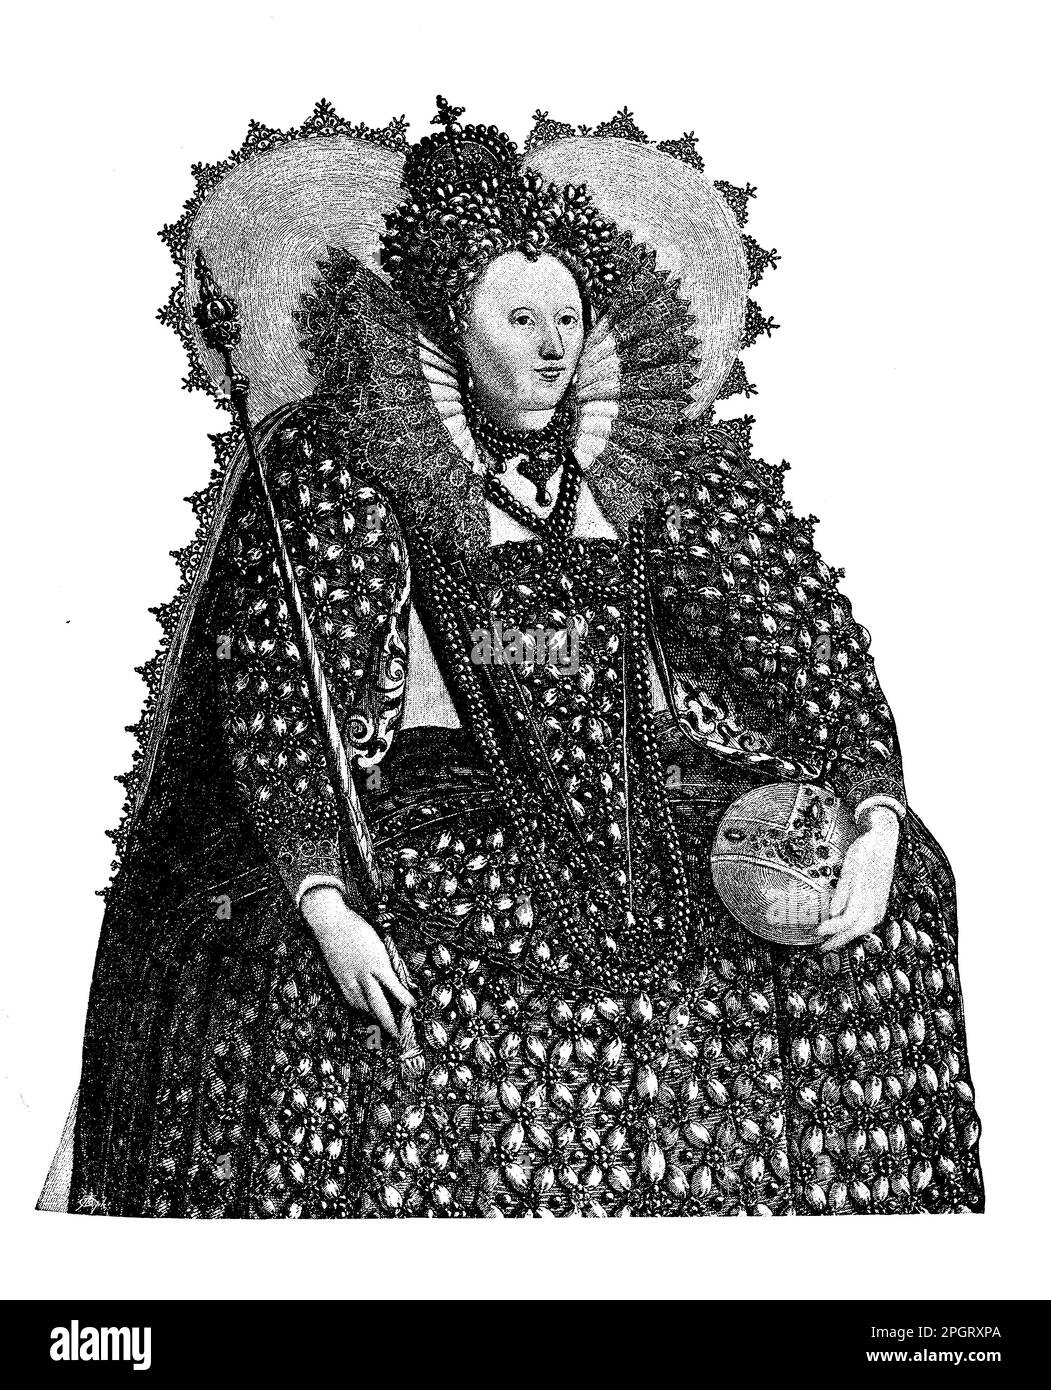 Elisabetta i d'Inghilterra era uno dei monarchi più potenti e di successo della storia inglese. Regnò dal 1558-1603 e supervisionò il fiorire della cultura rinascimentale inglese, la sconfitta dell'Armada spagnola e l'istituzione della Chiesa anglicana. Foto Stock